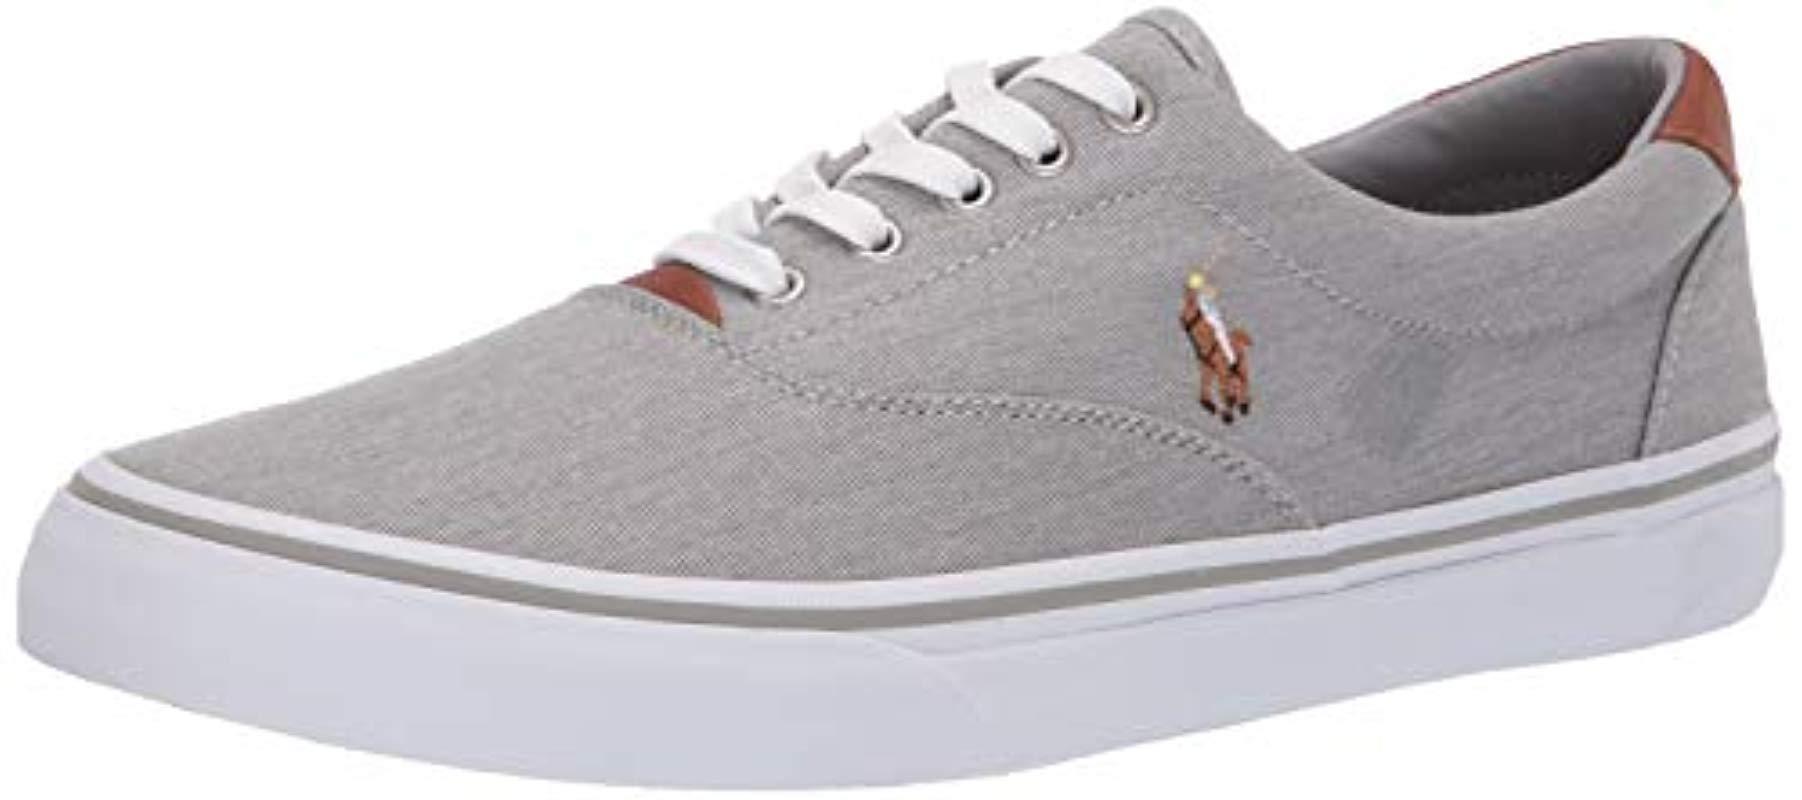 ralph lauren shoes grey